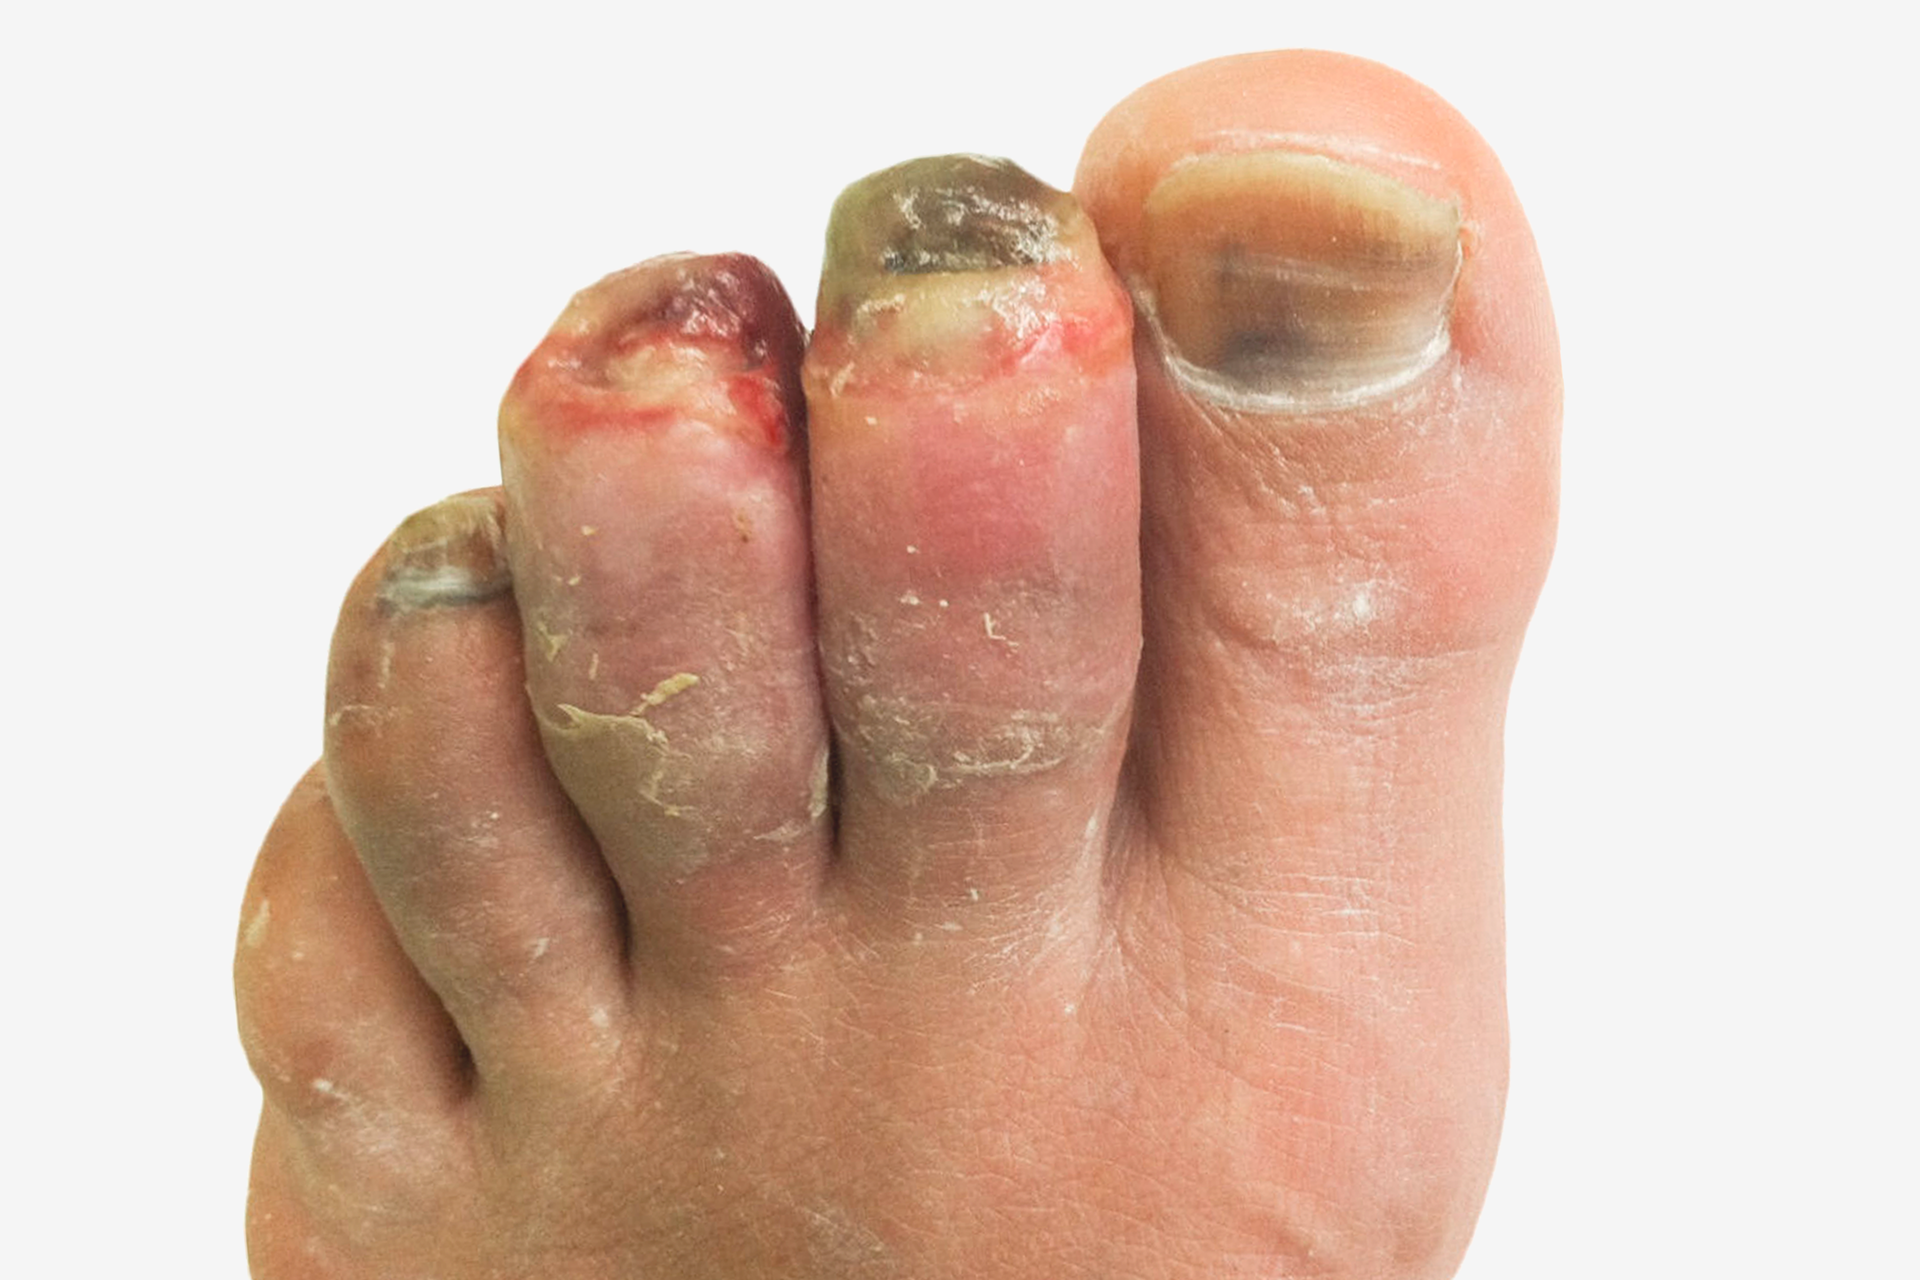 Zdjęcie po prawej to palce stóp z odmrożeniem III stopnia. Palce stopy pokryte są fioletową skórą na całej długości. Palce są opuchnięte. Paznokcie czarne. Okolice wokół paznokci pokryte krwią. Paznokieć dużego palca pokryty jest czarnymi plamami.